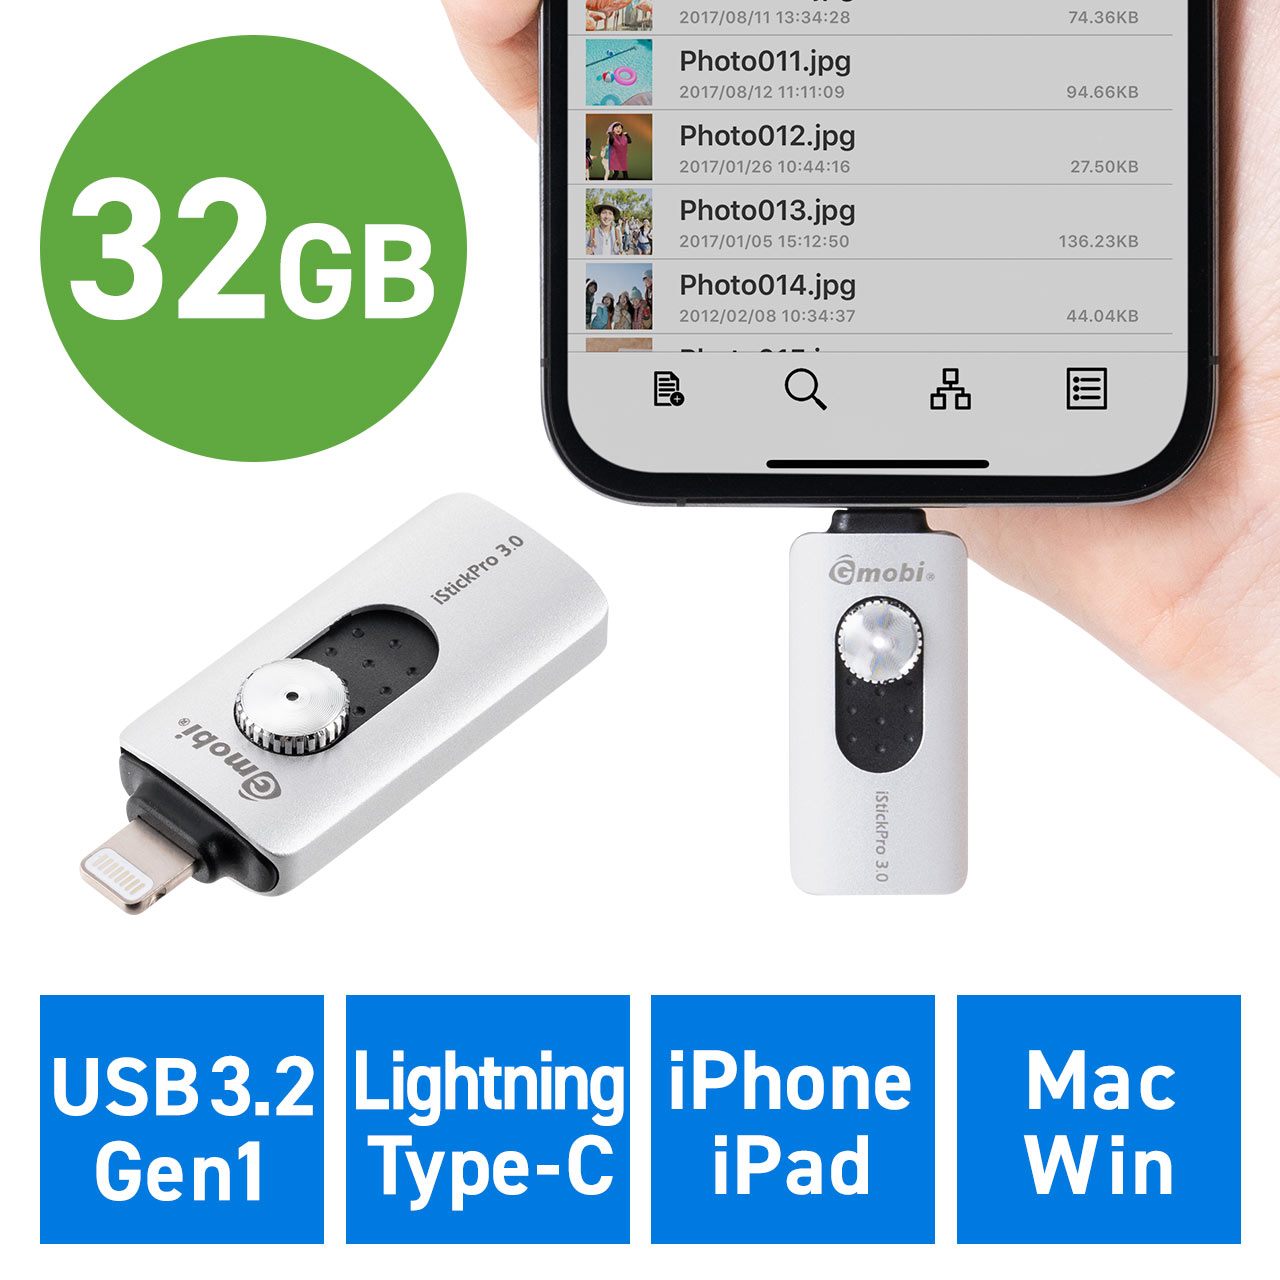 売れ筋ランキングも iPhone バックアップ 256GB iPad メモリ内蔵 データ保存 写真 動画 充電しながら USBメモリ MFi認証  USB3.2 Gen1